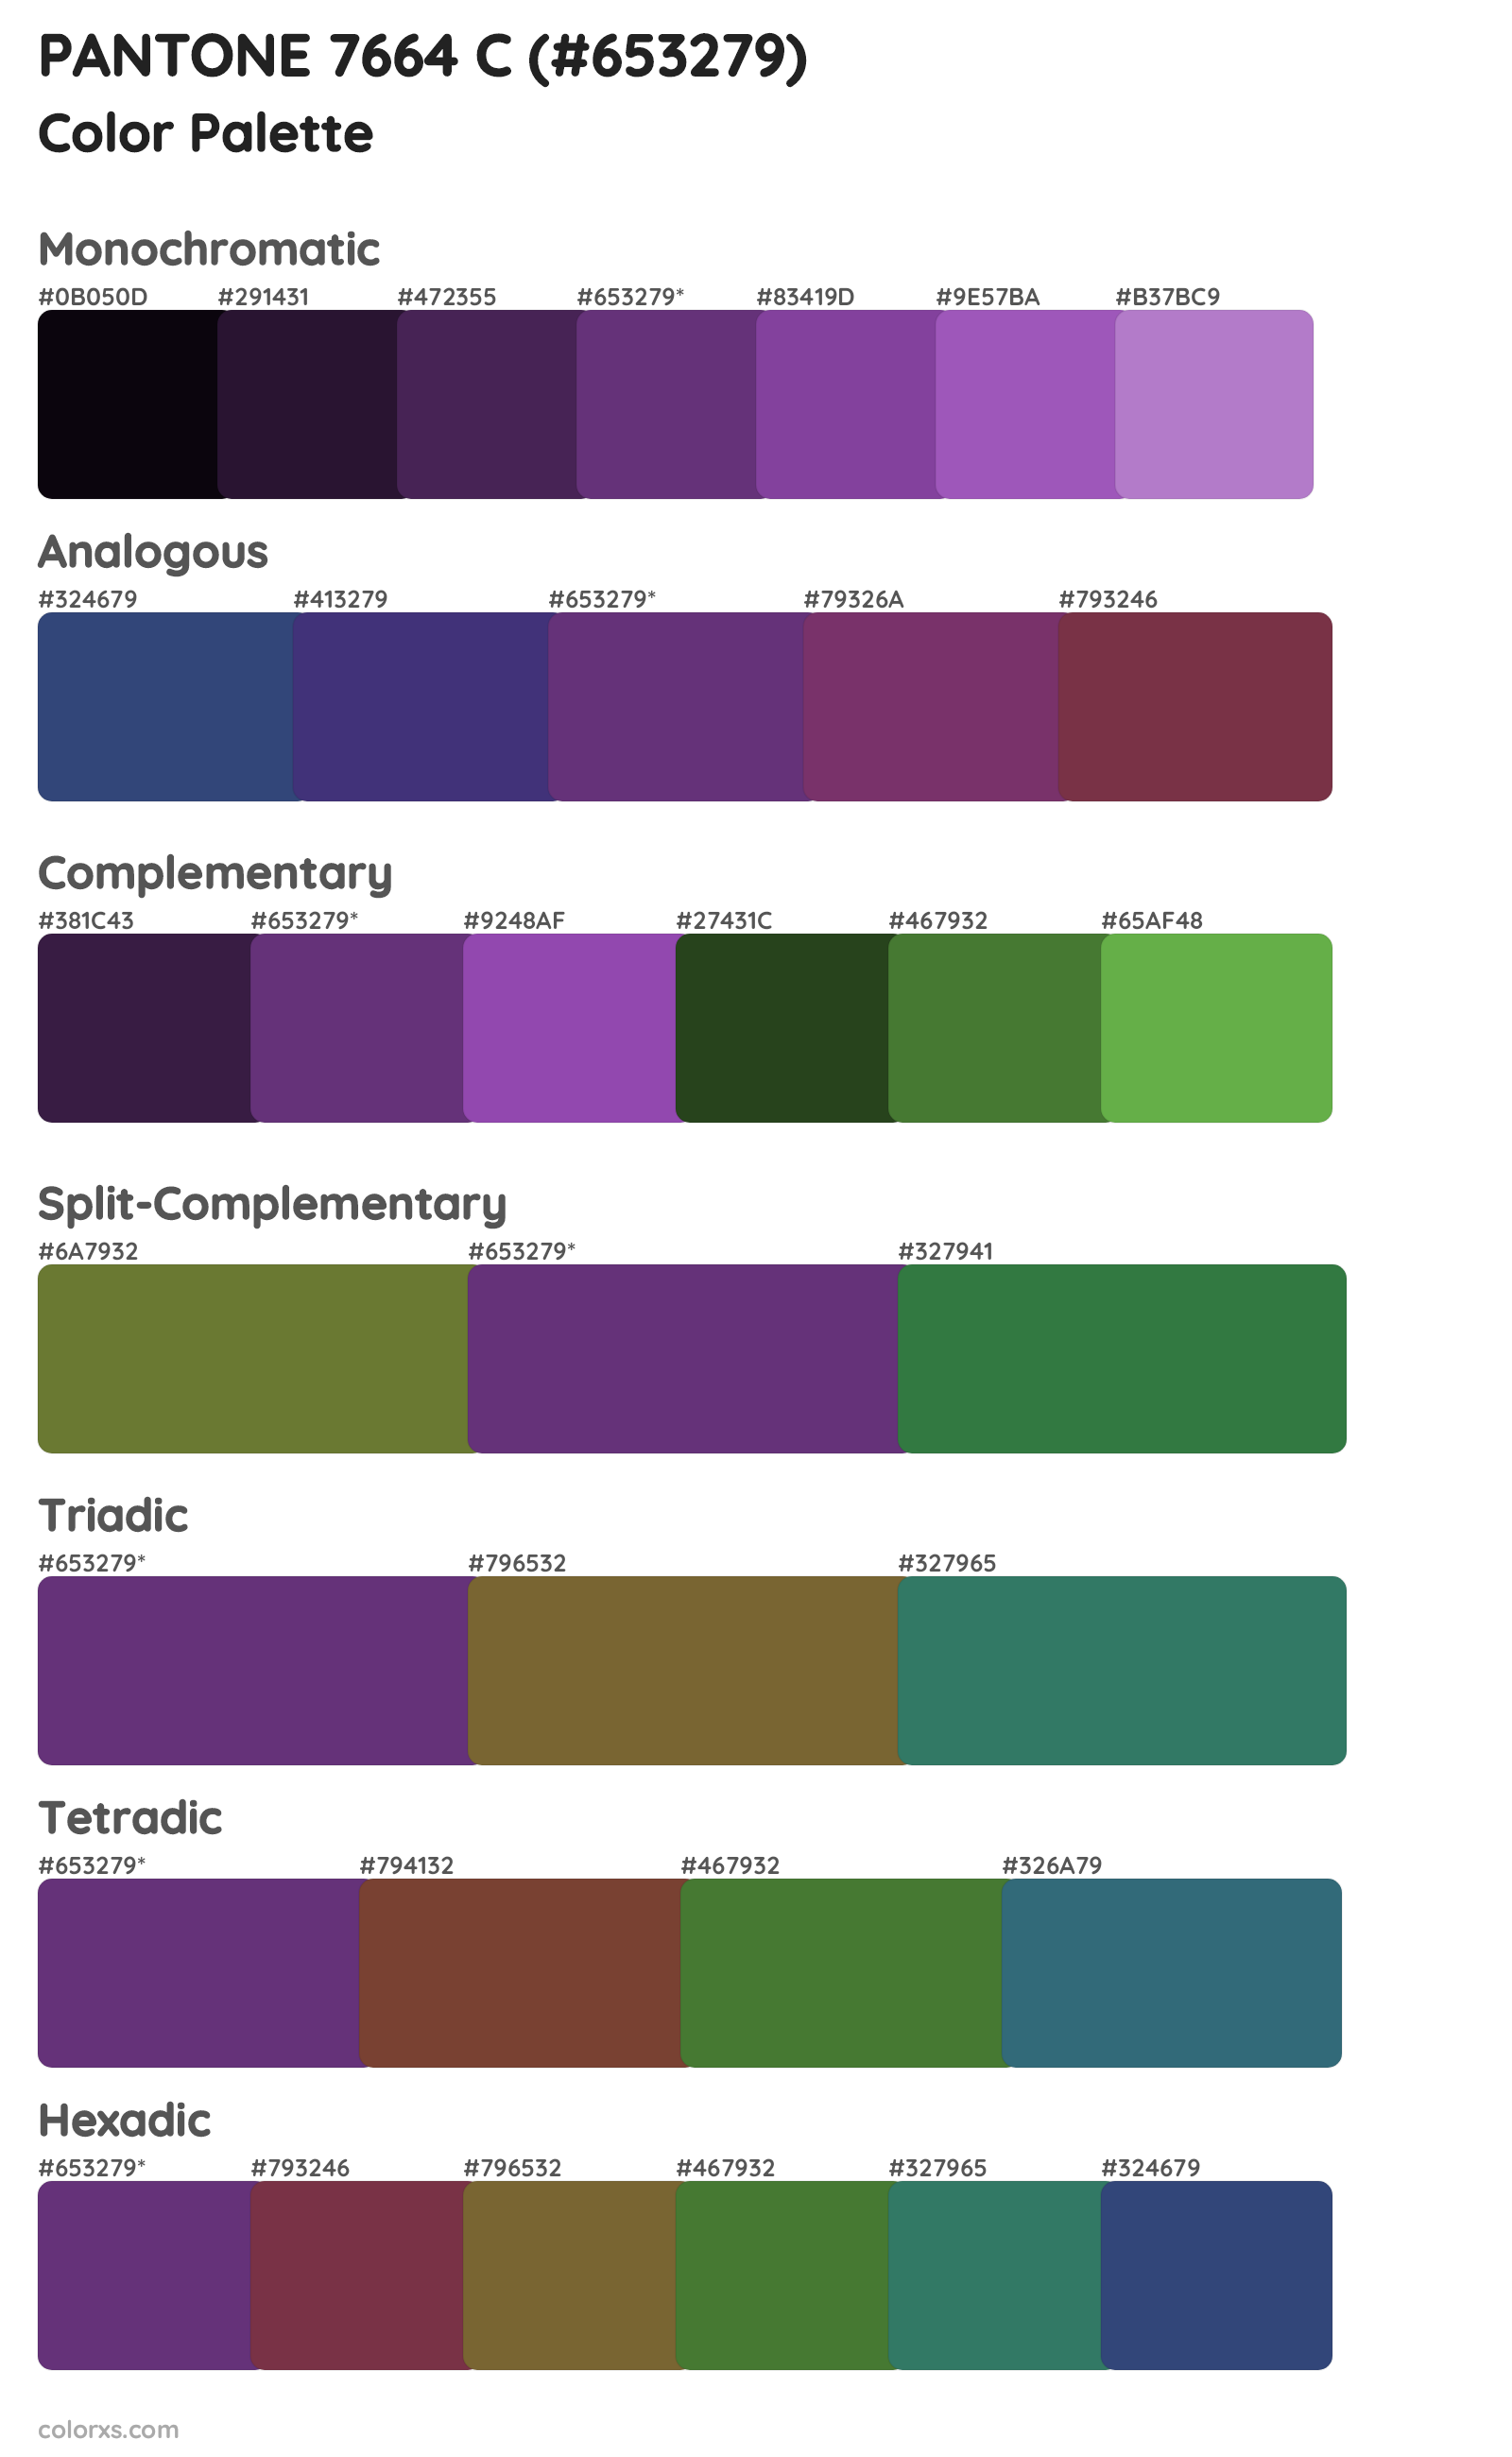 PANTONE 7664 C Color Scheme Palettes